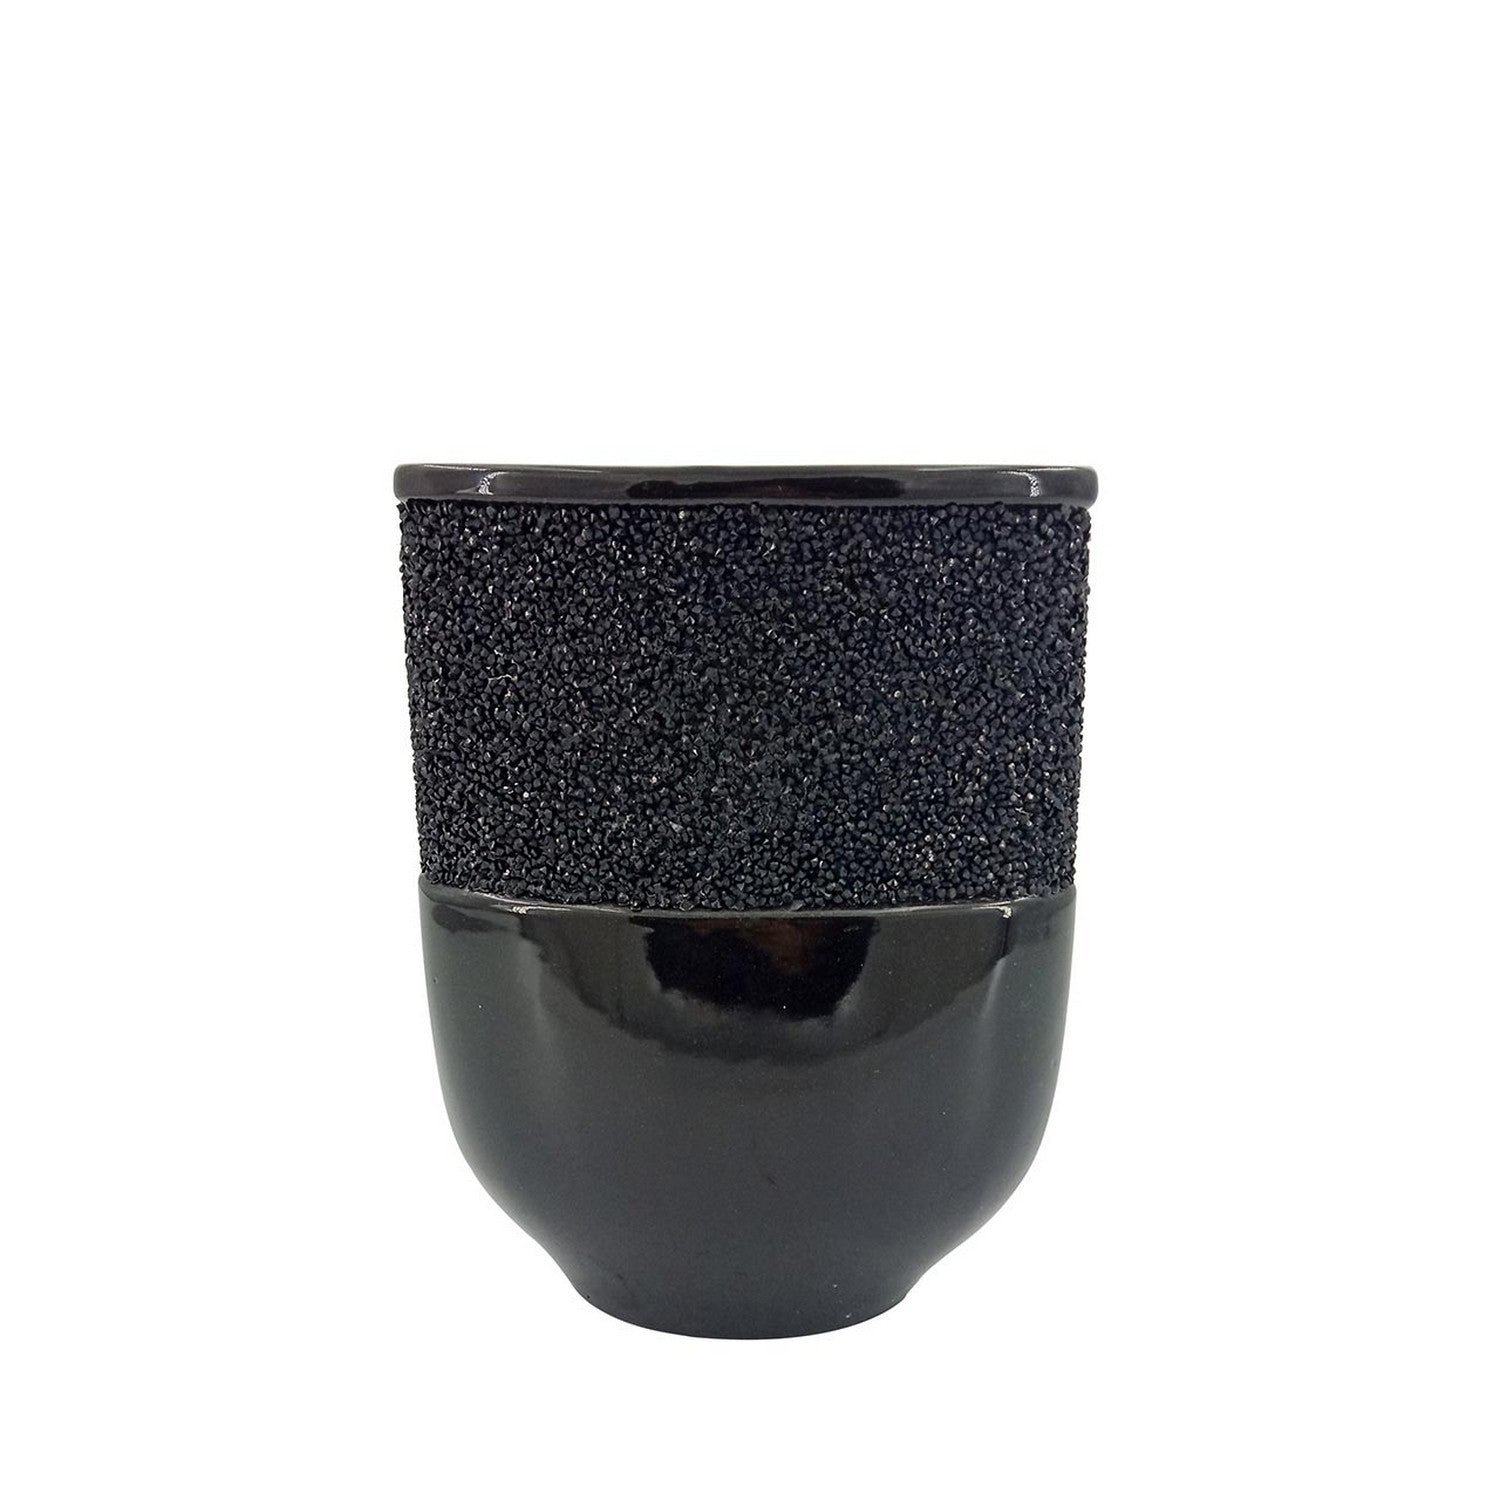 23cm Black Glitz and Glaze Vase